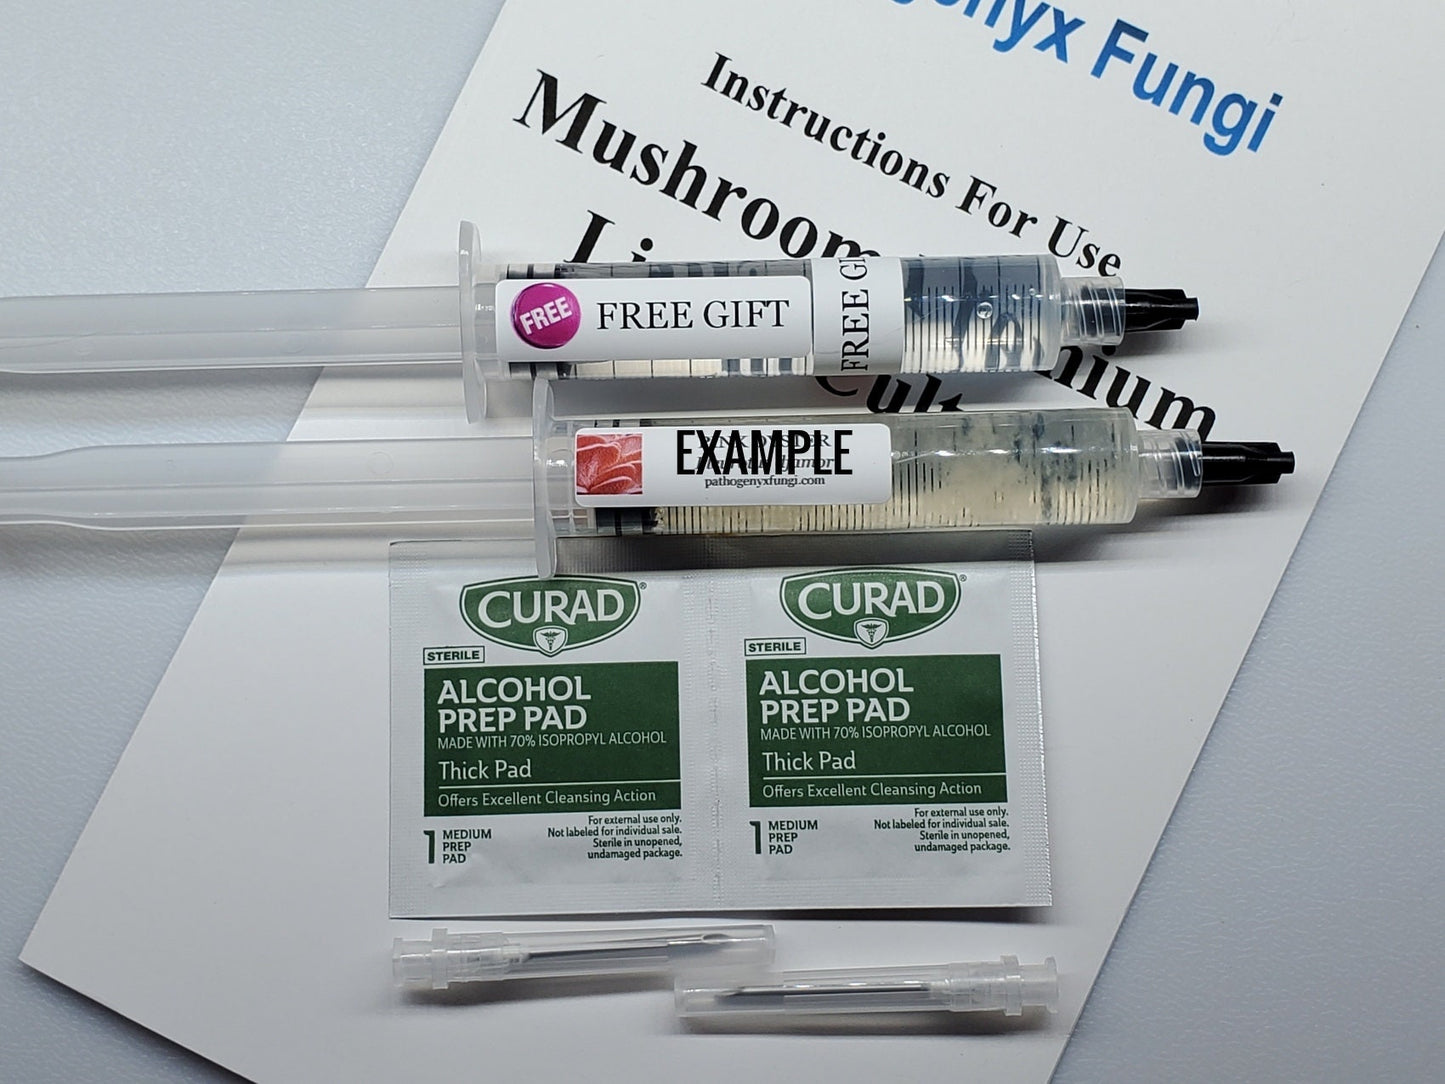 GOLDEN CHANTERELLE (Es-3) Mushroom, liquid culture syringe, Premium Mycelium™